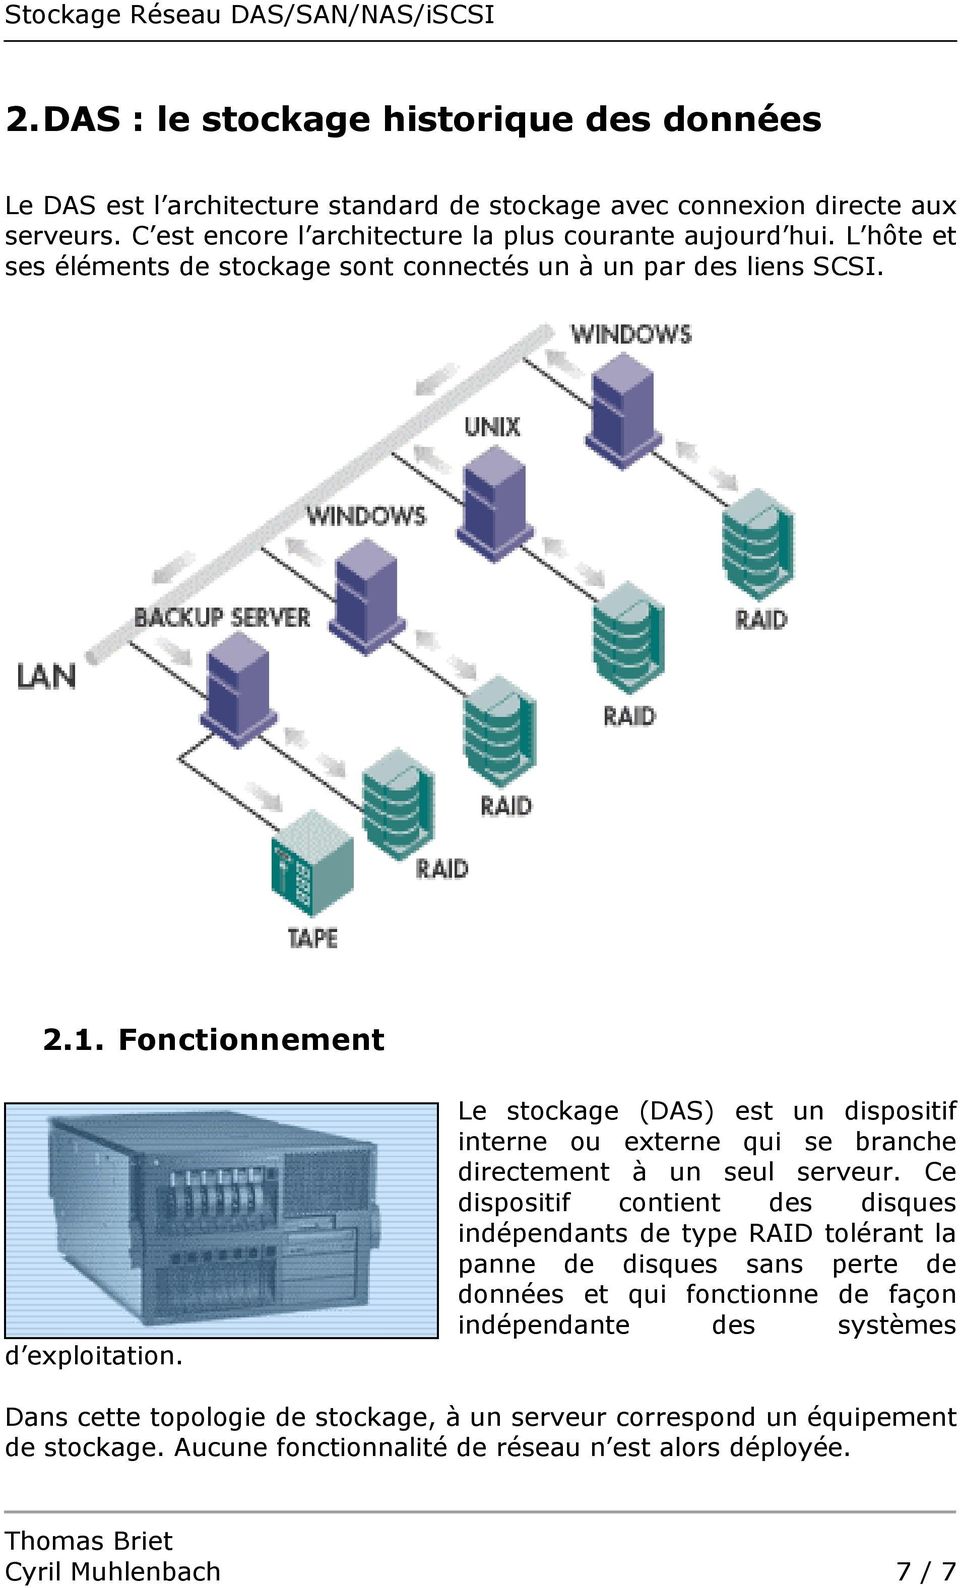 Le stockage (DAS) est un dispositif interne ou externe qui se branche directement à un seul serveur.